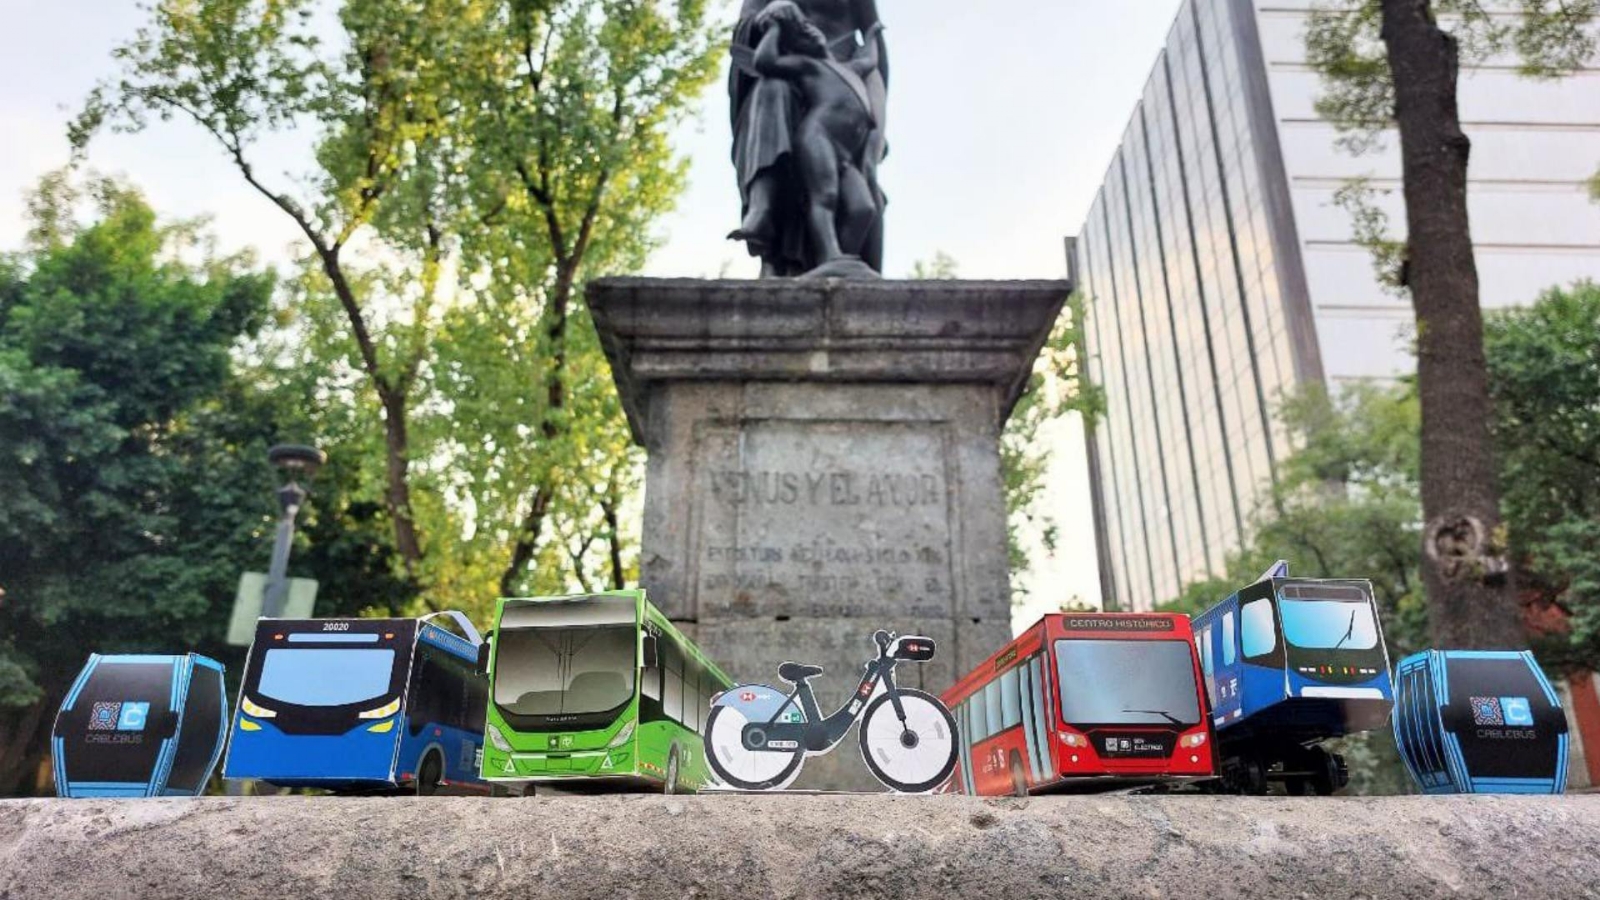 Semovi regala 'Metrobusitos' por el Día del Niño en la CDMX